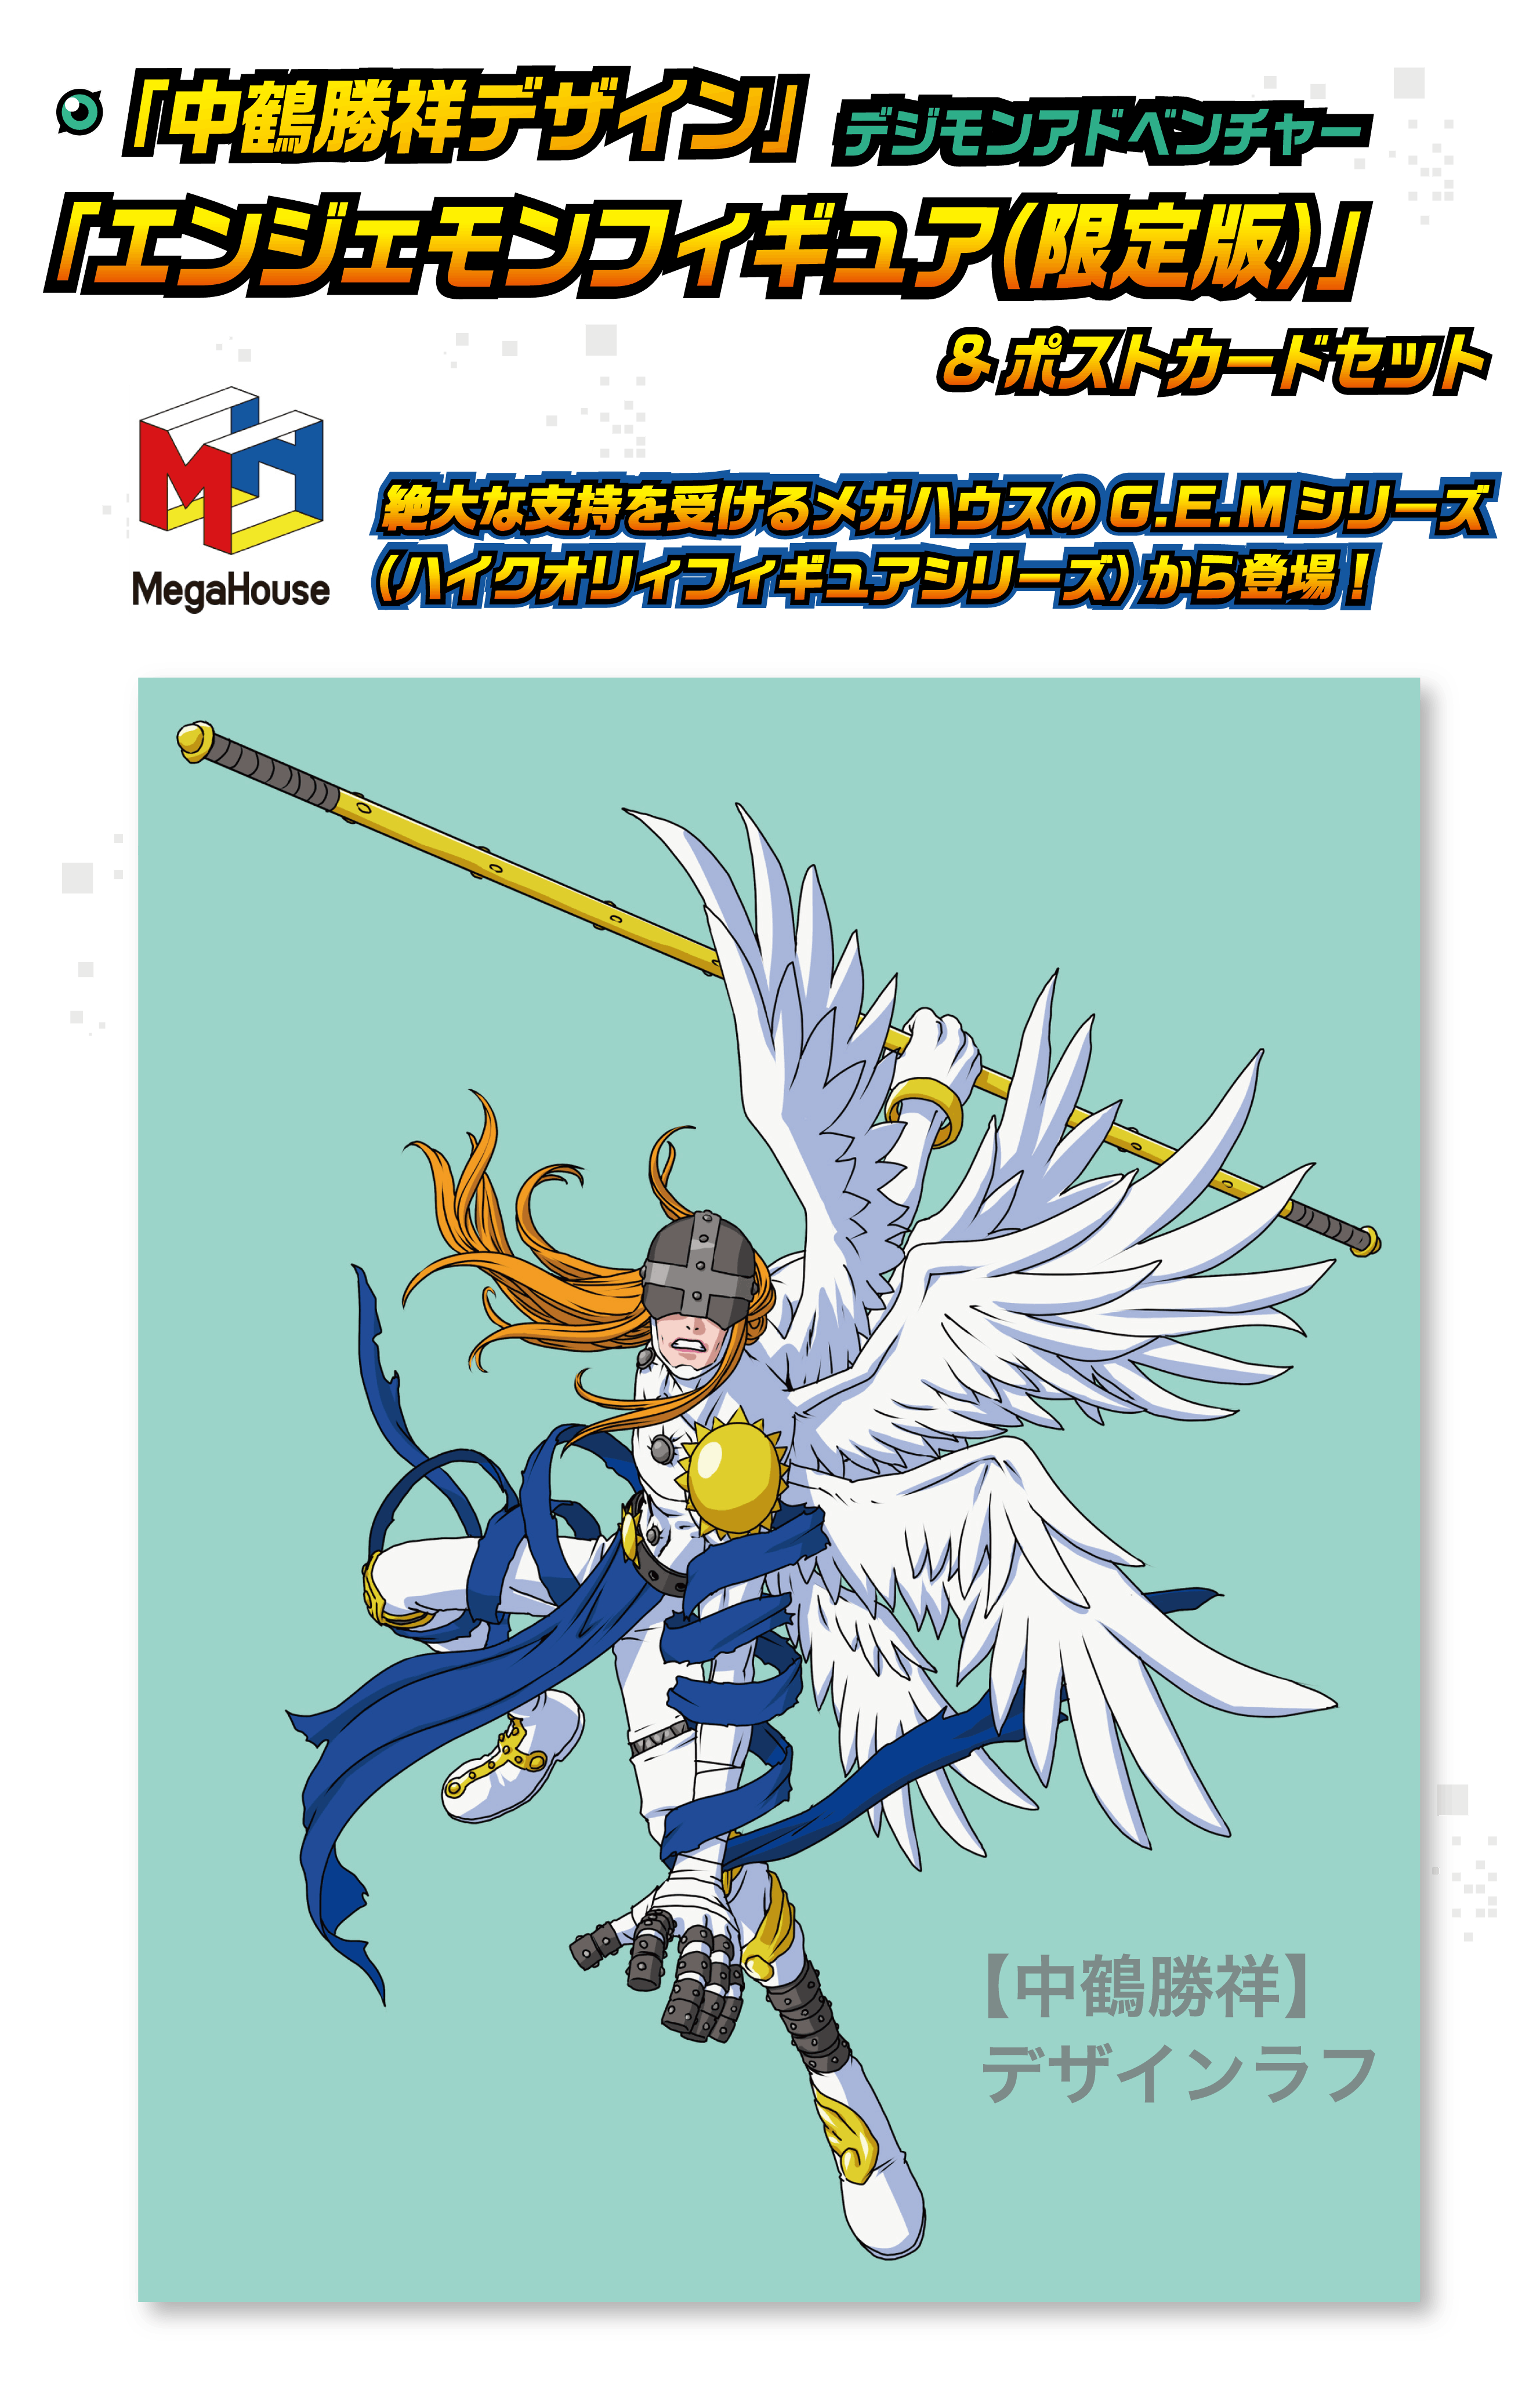 送料無料キャンペーン Digimon th Adventure デジモンアドベンチャー デジモン Blu Ray プロジェクト メモリアルストーリー 日本 Hlt No